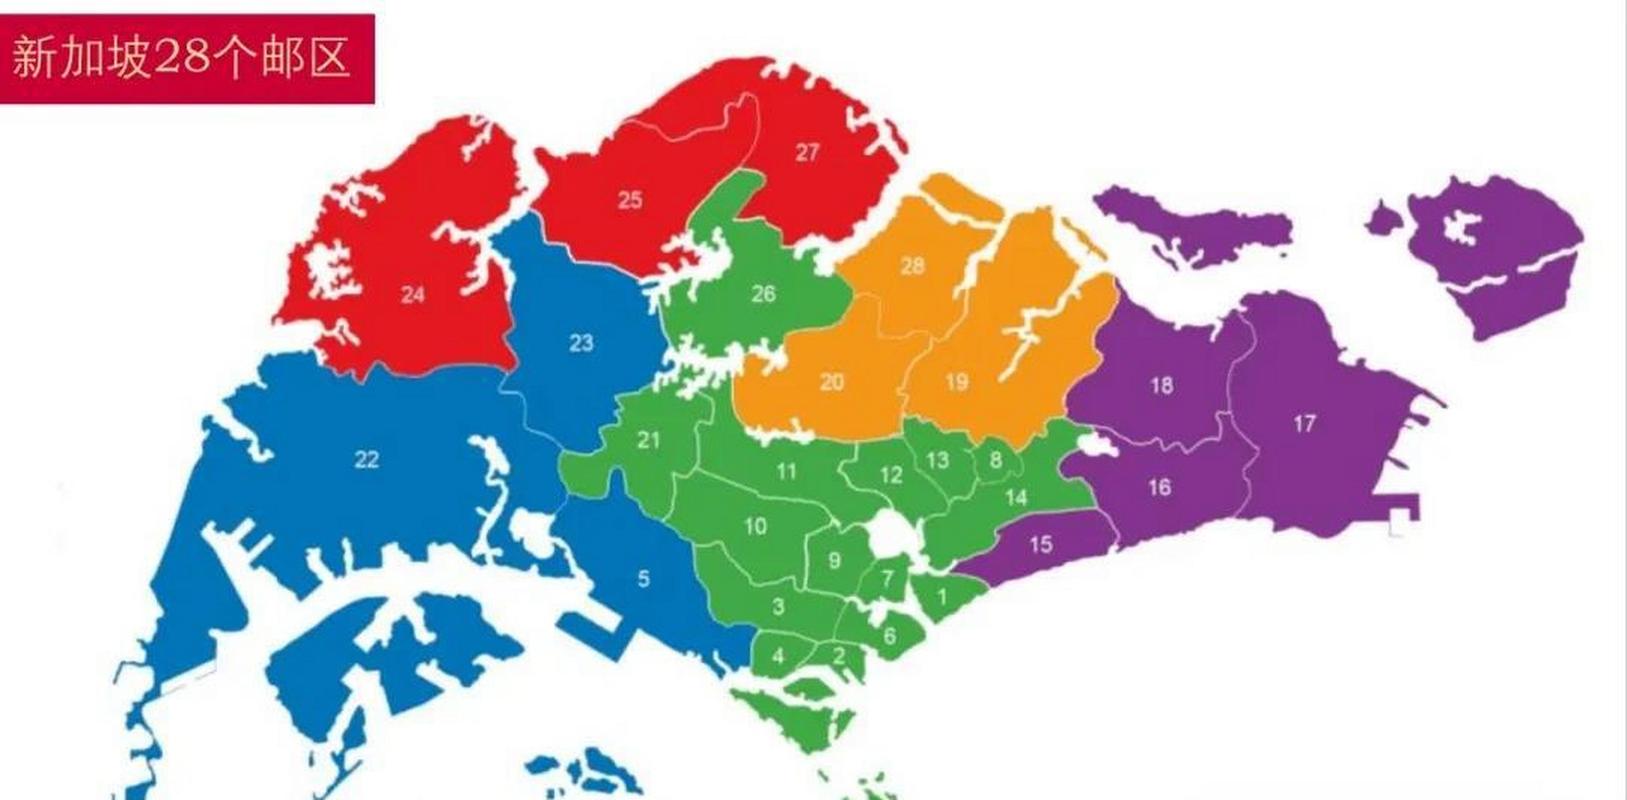 新加坡全国划分为五个行政区,共分了87个选区,但他全国总面积只有720